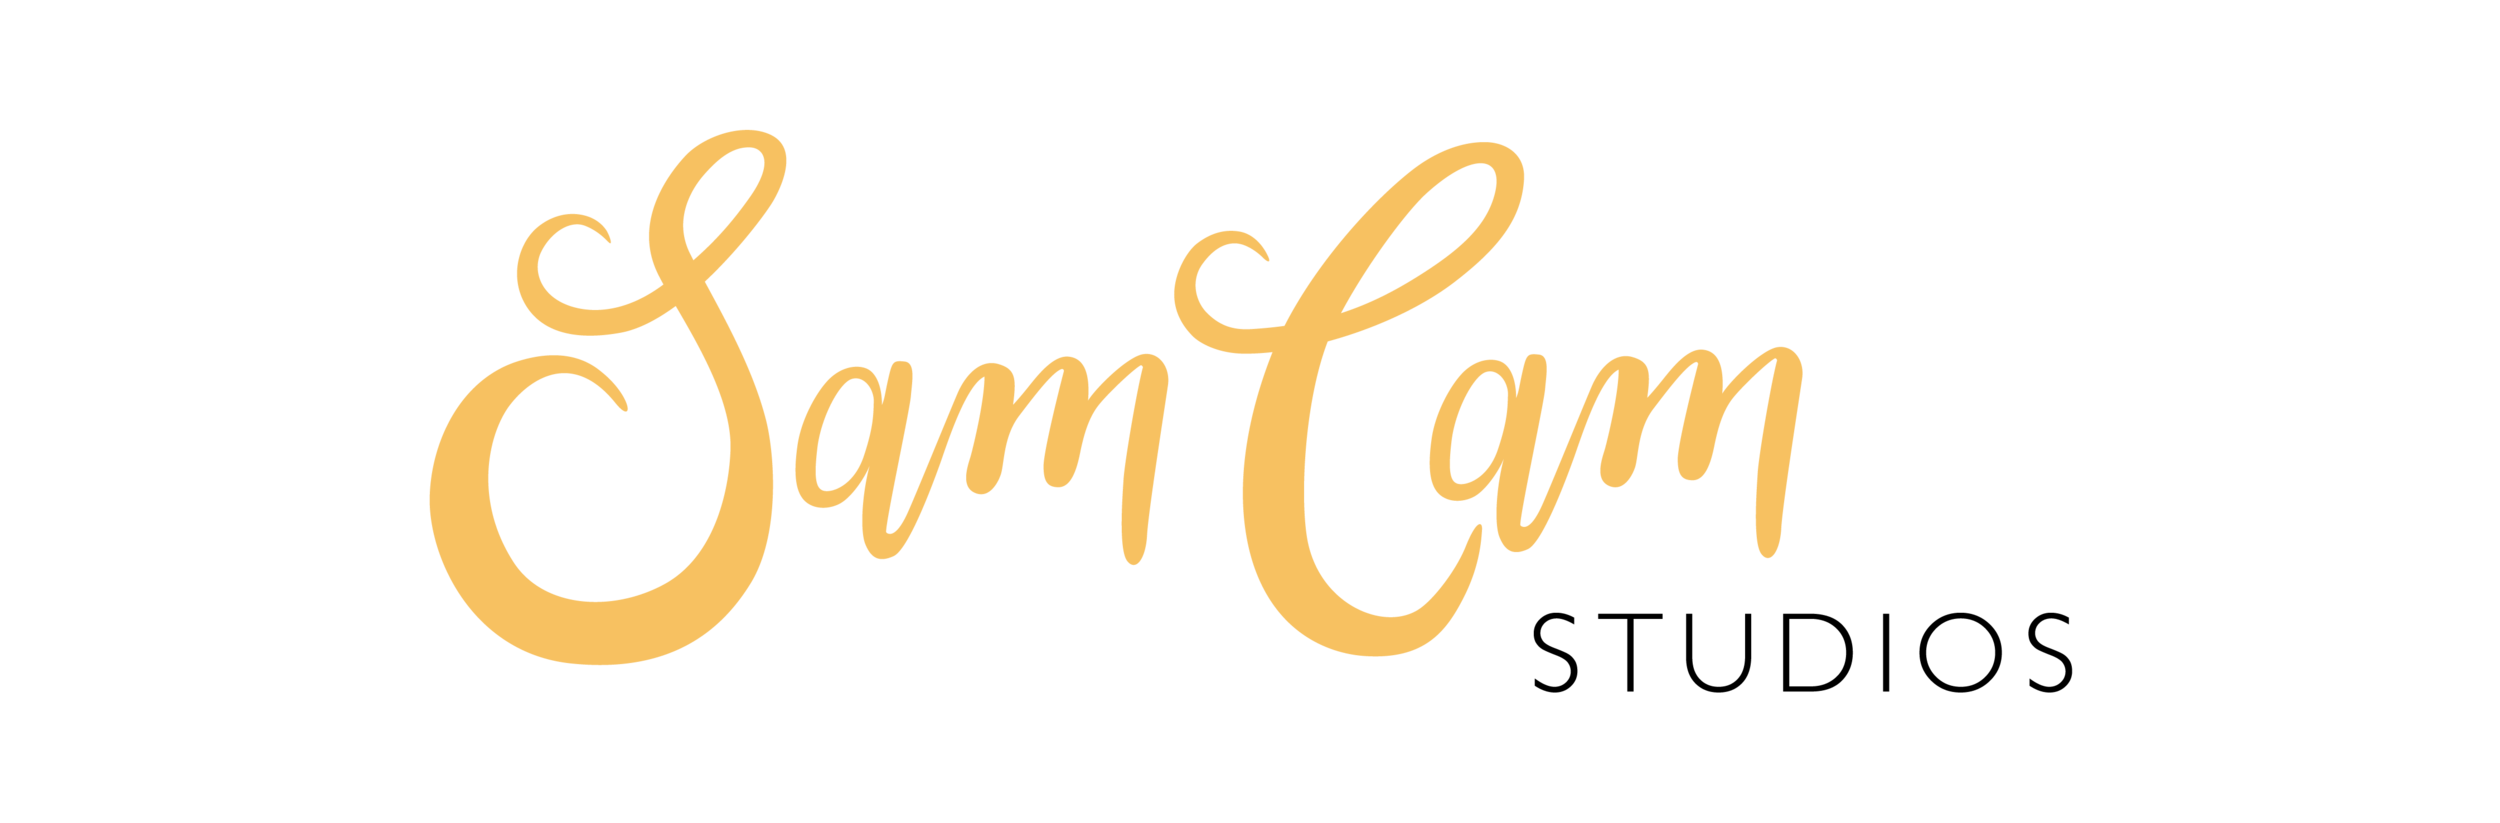 SamCam Studios